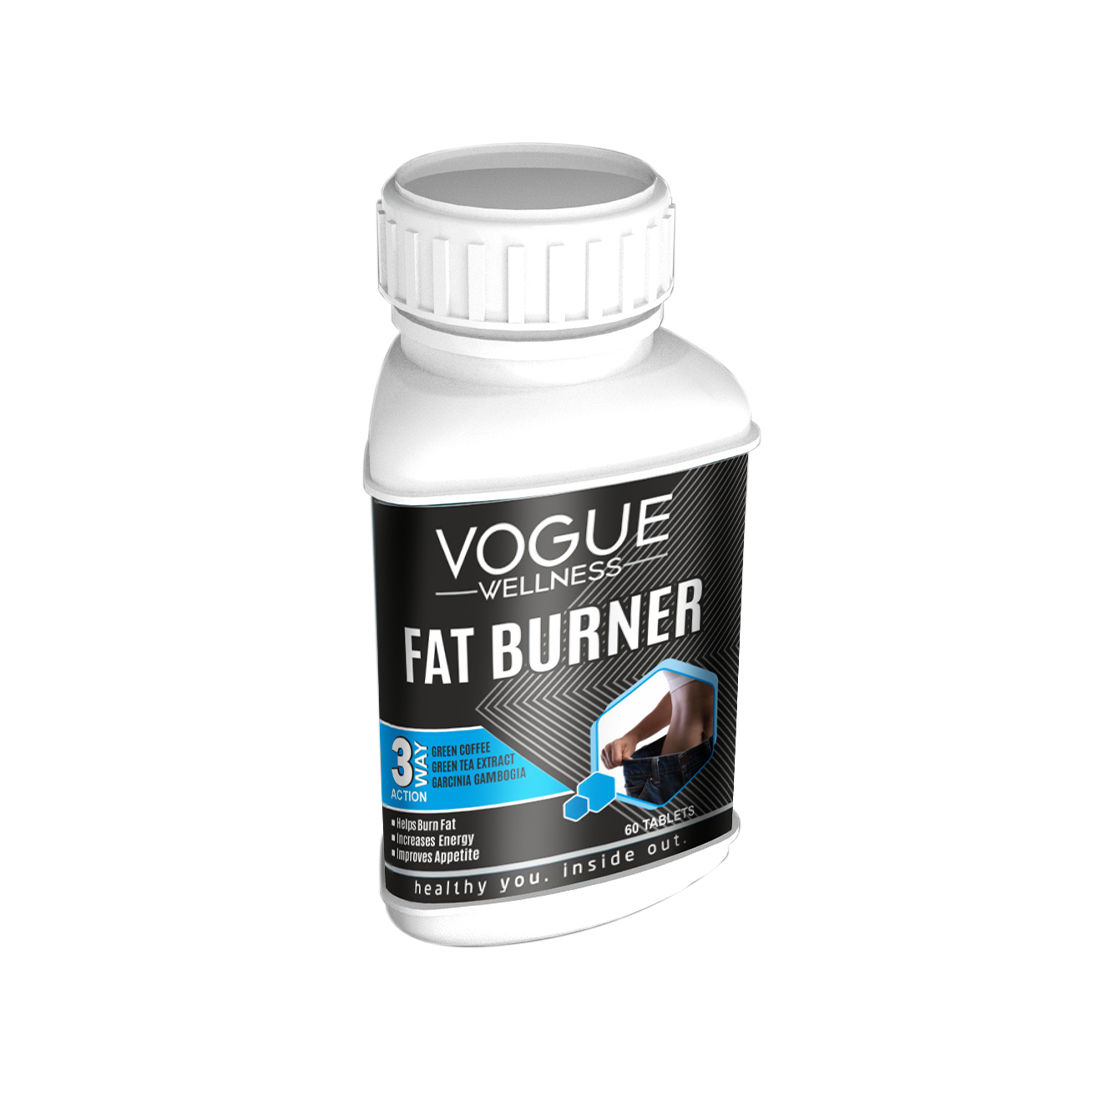 Vogue Wellness Fat Burner, 60 Tablets, Pack of 1 